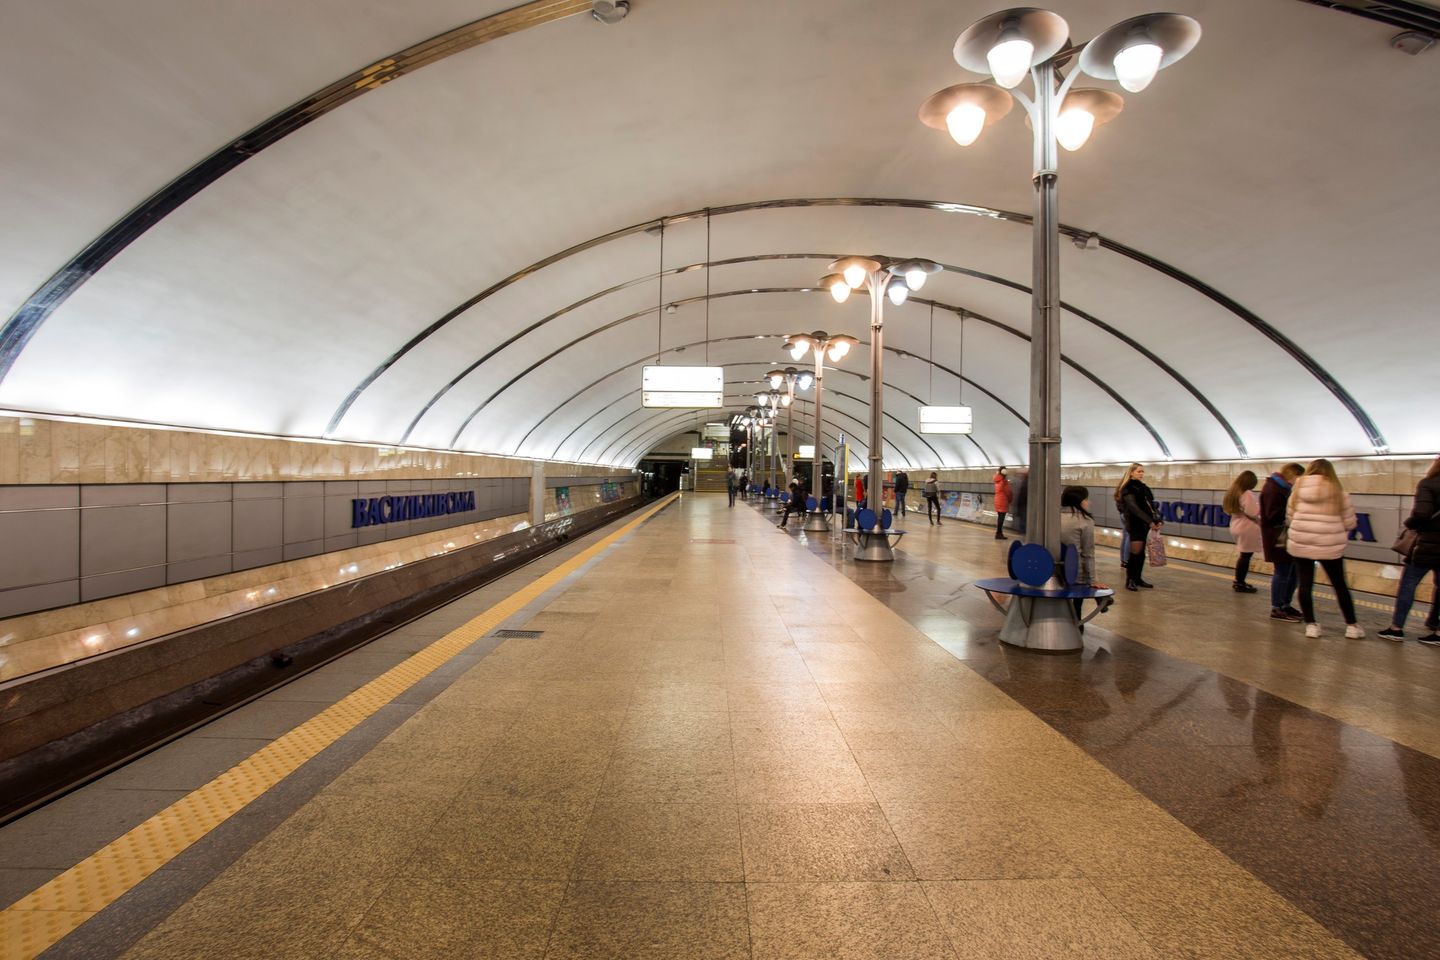 Від суботи, 1 квітня, на станції метро “Васильківська” запрацює інший вестибюль